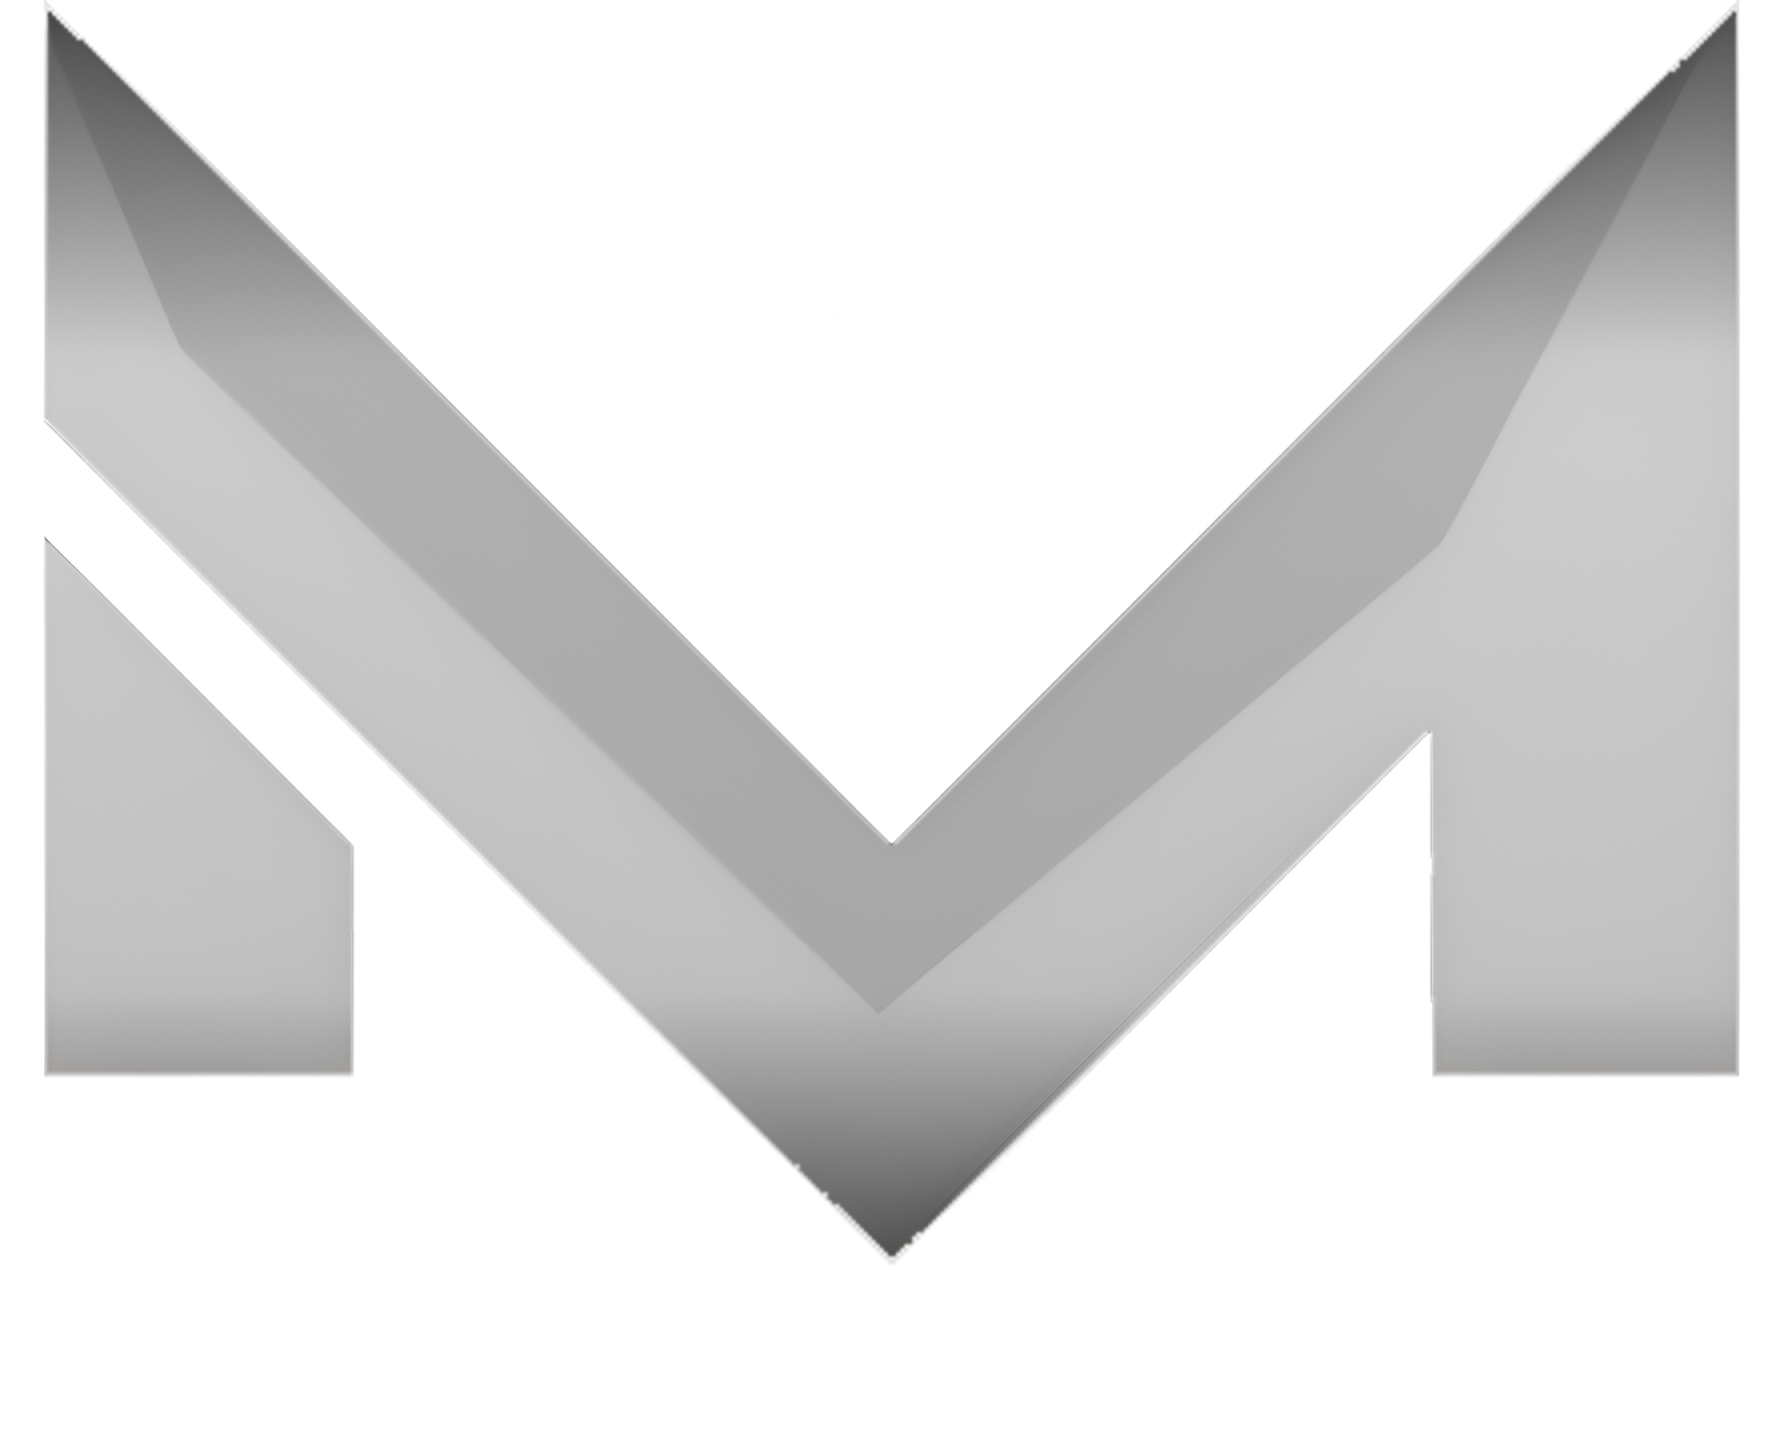 Matt Sowards Merch